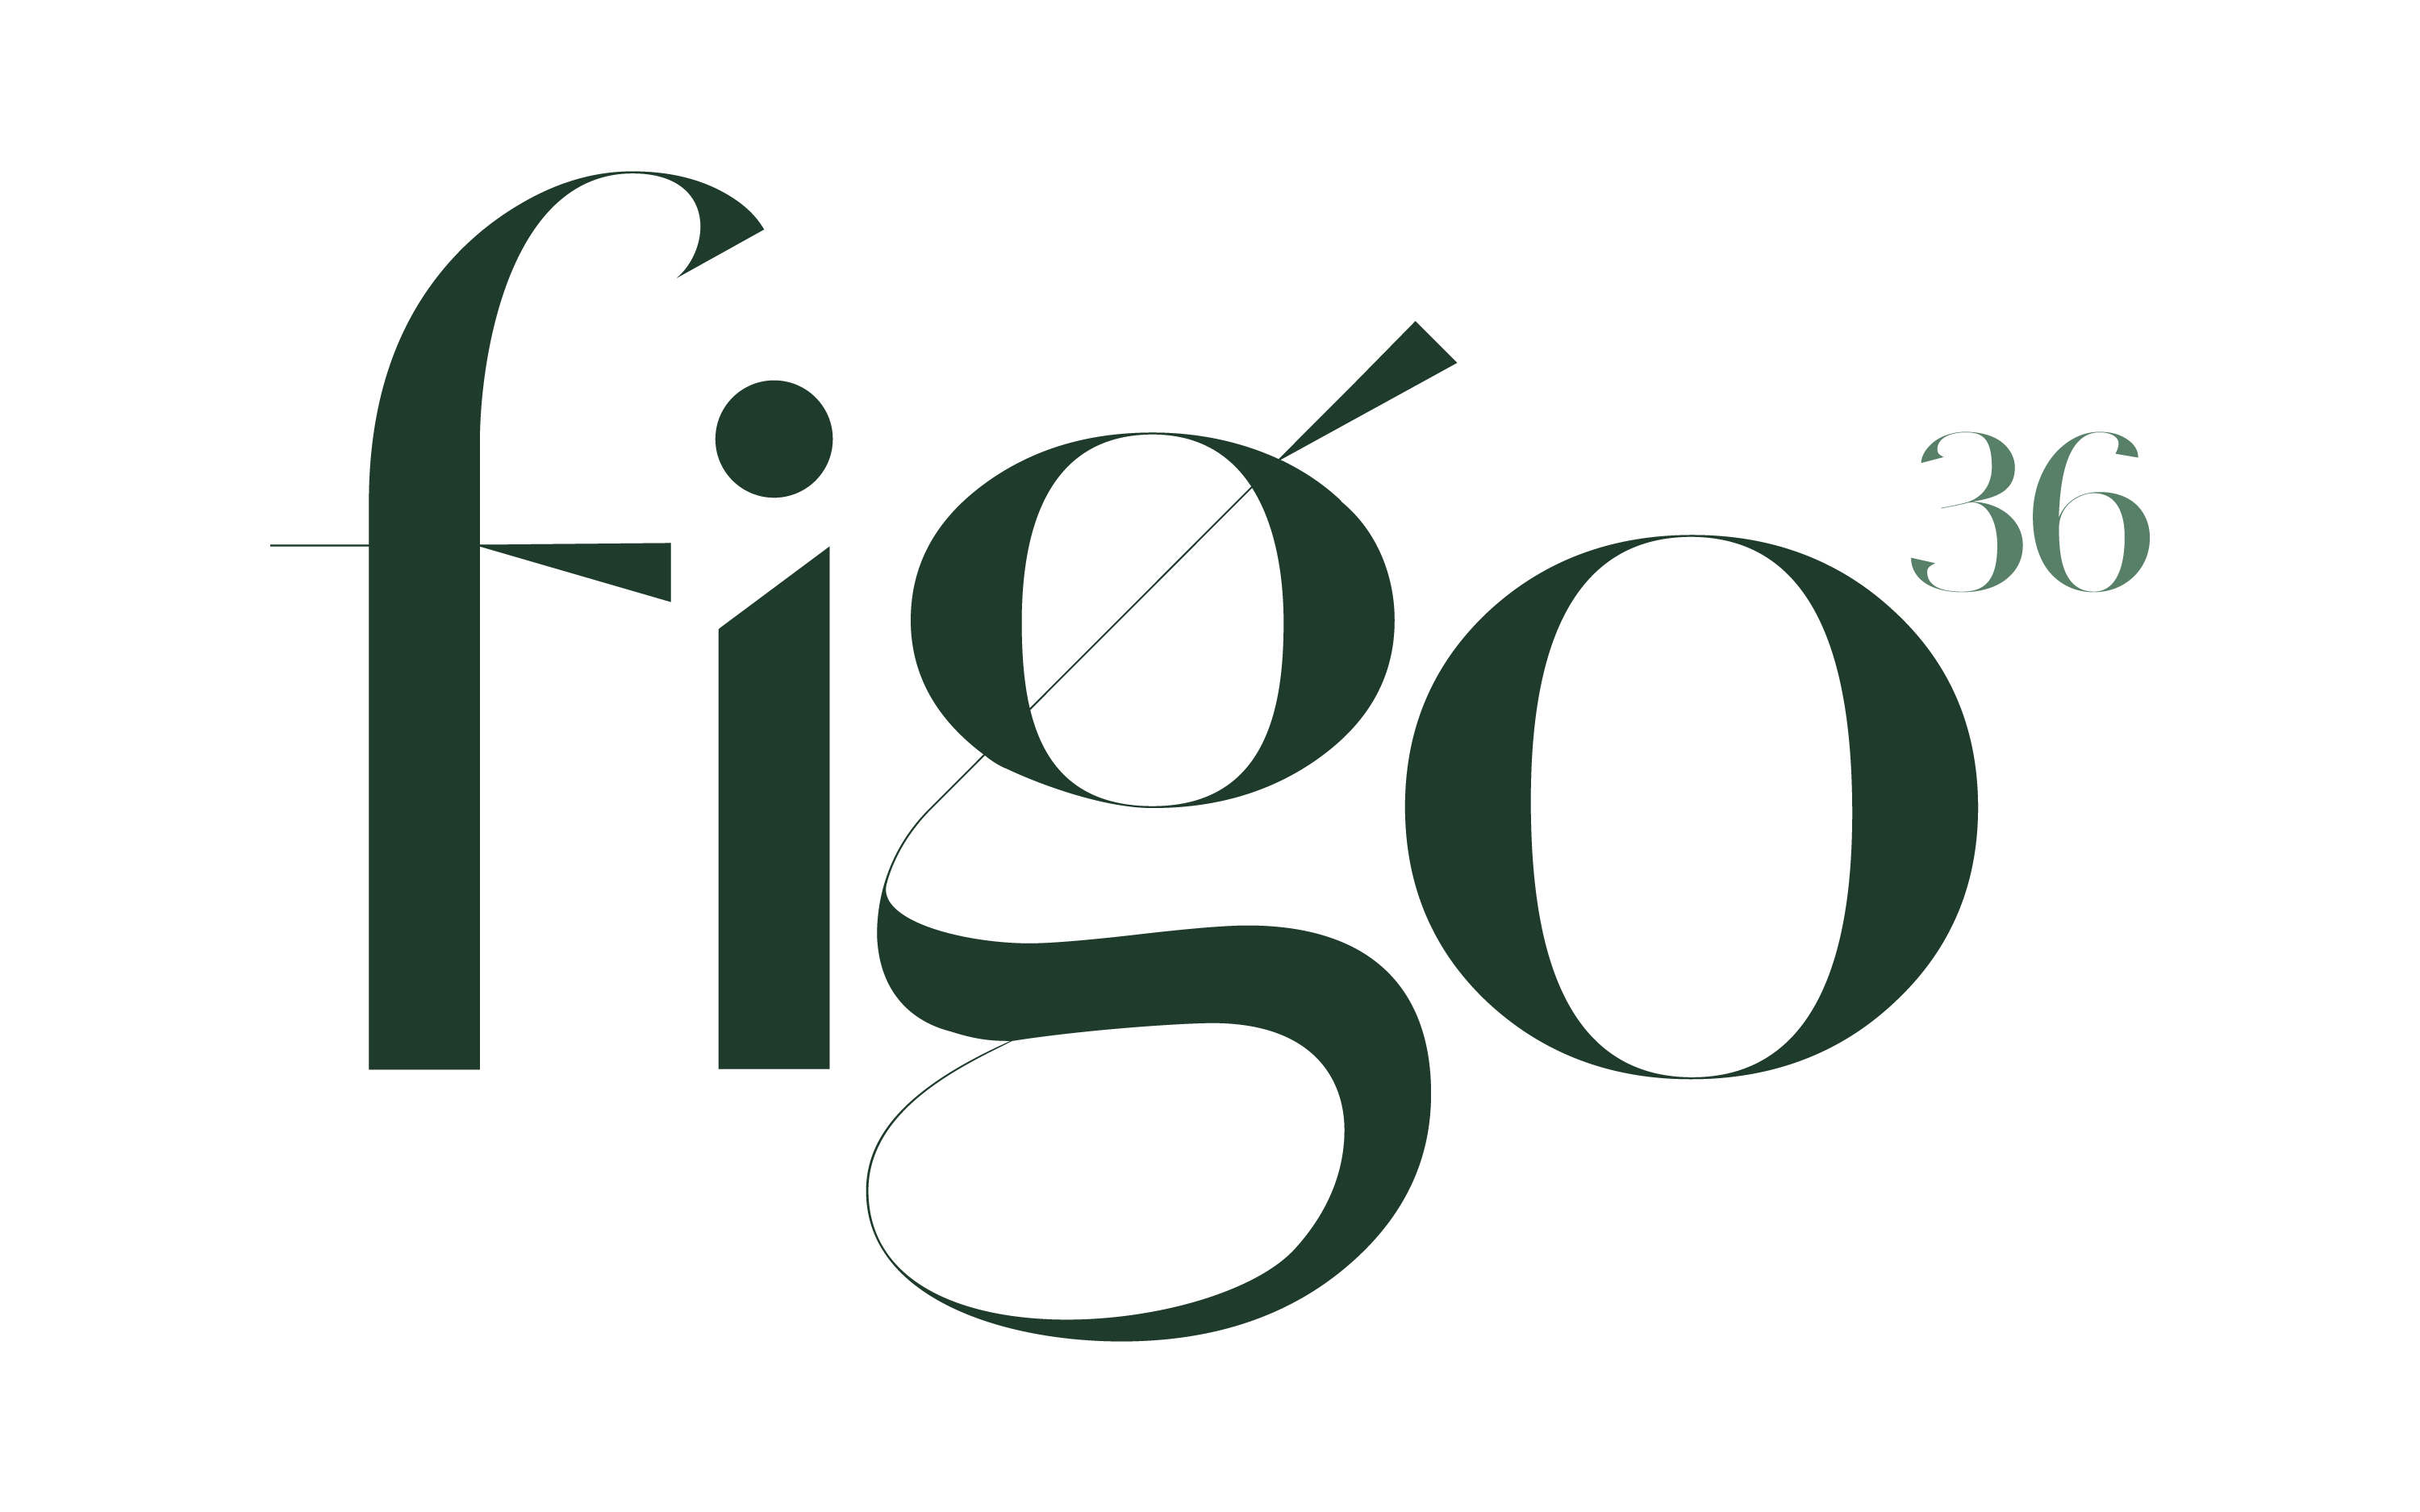 Figo36 logo top